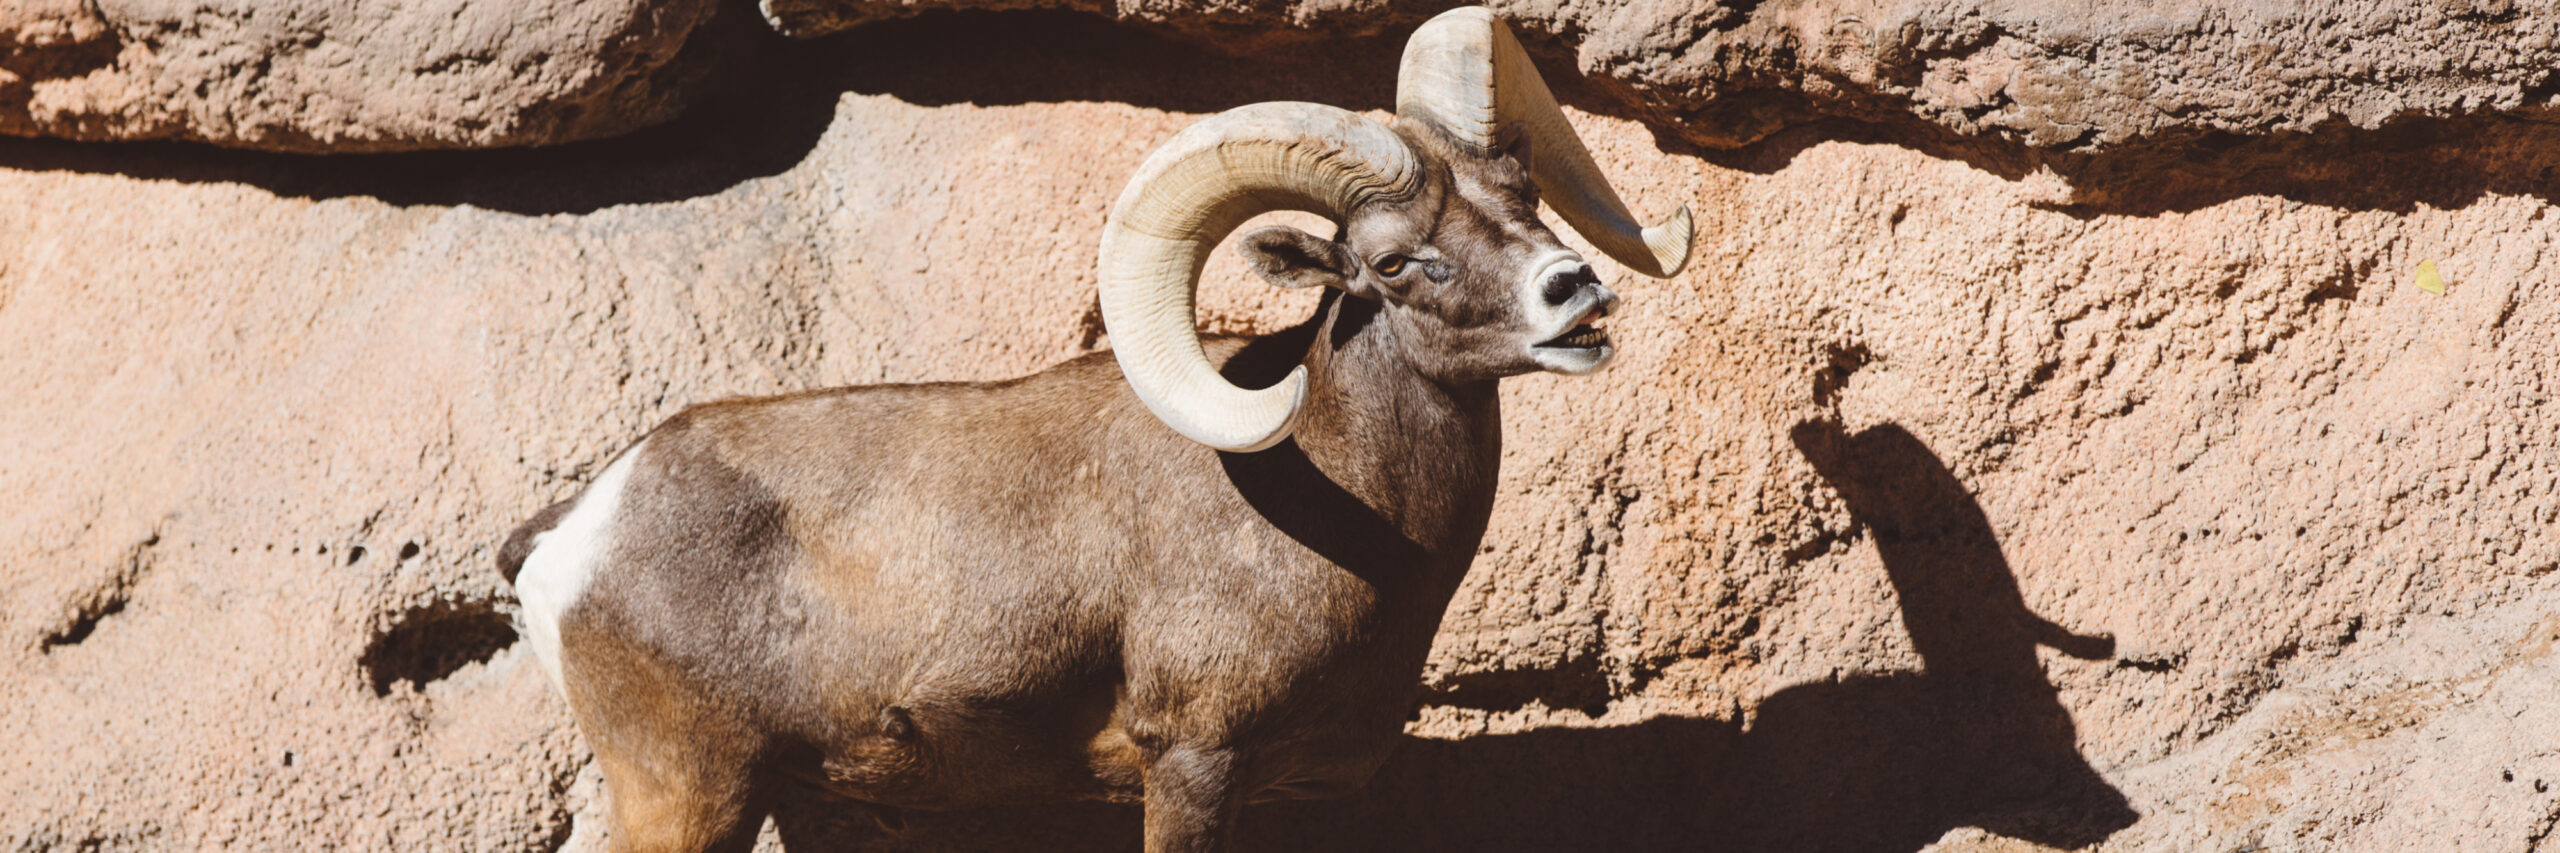 south-baja-desert-bighorn-sheep